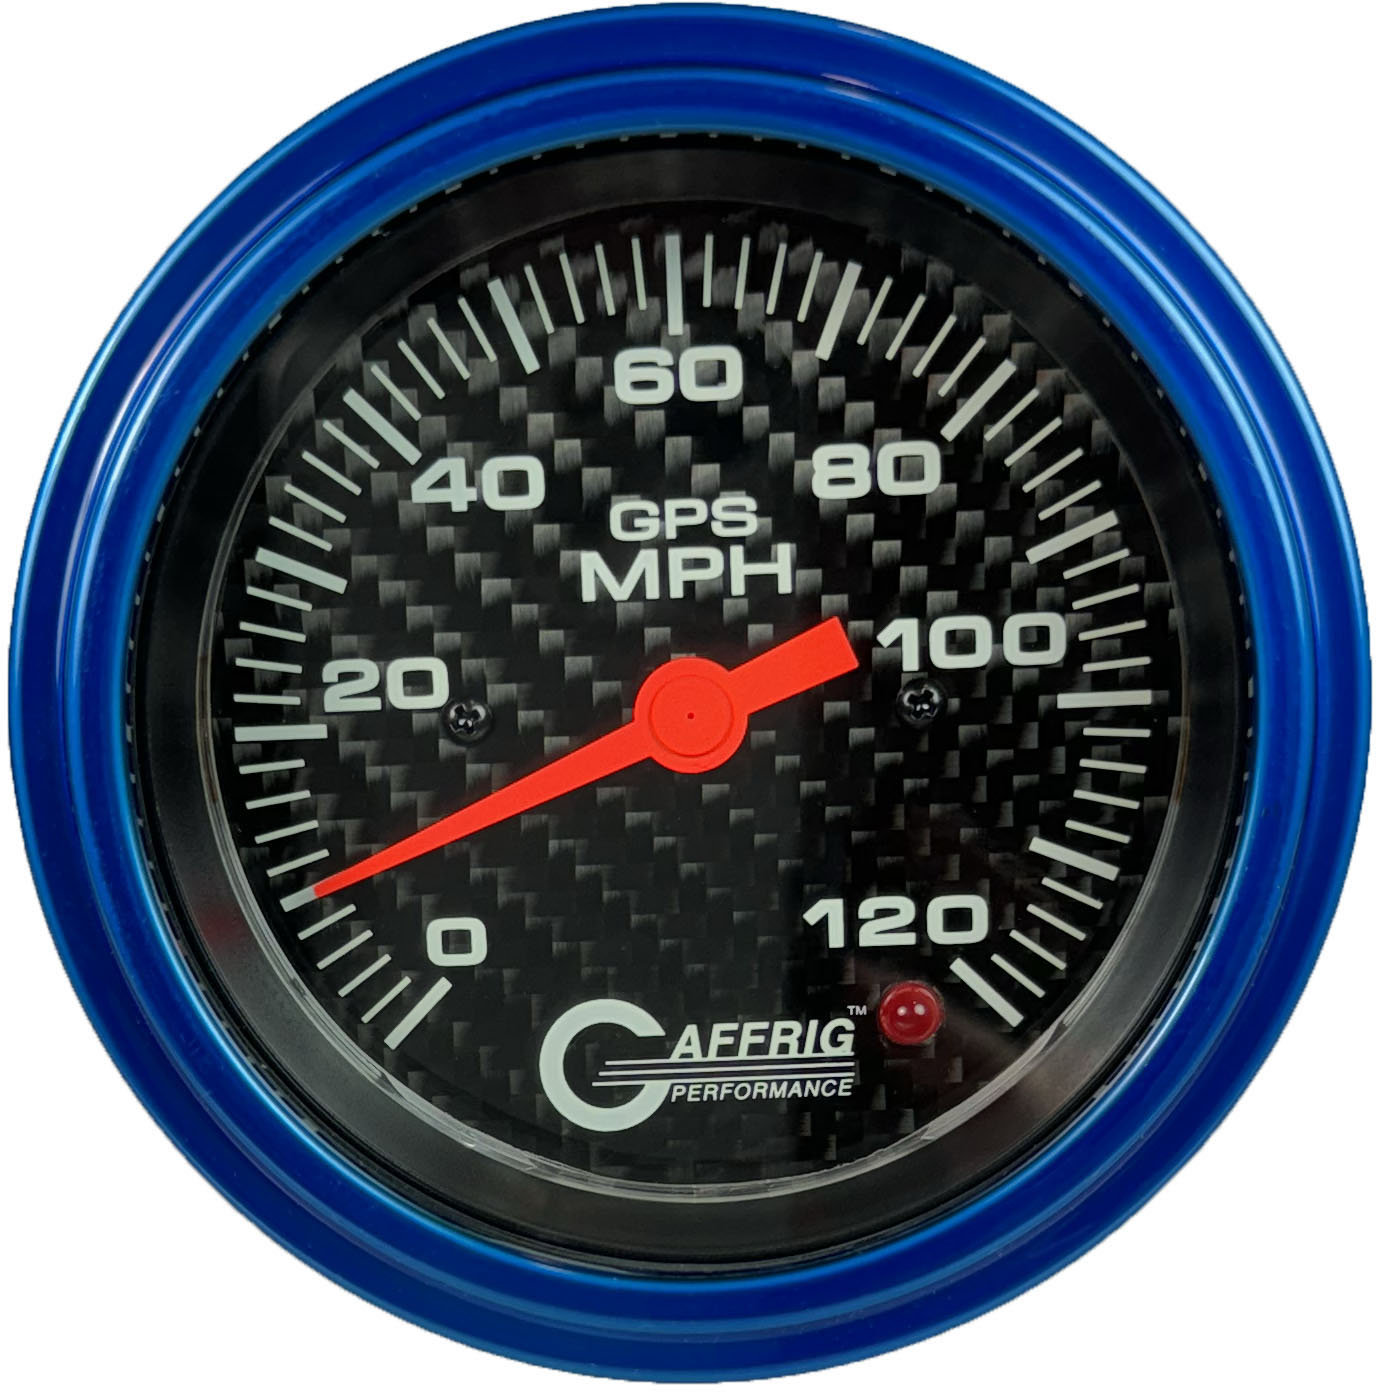 GAFFRIG PART #4056 3 3/8 INCH GPS ANALOG 120 MPH SPEEDOMETER GAUGE KIT CARBON FIBER BLUE / STEP RIM